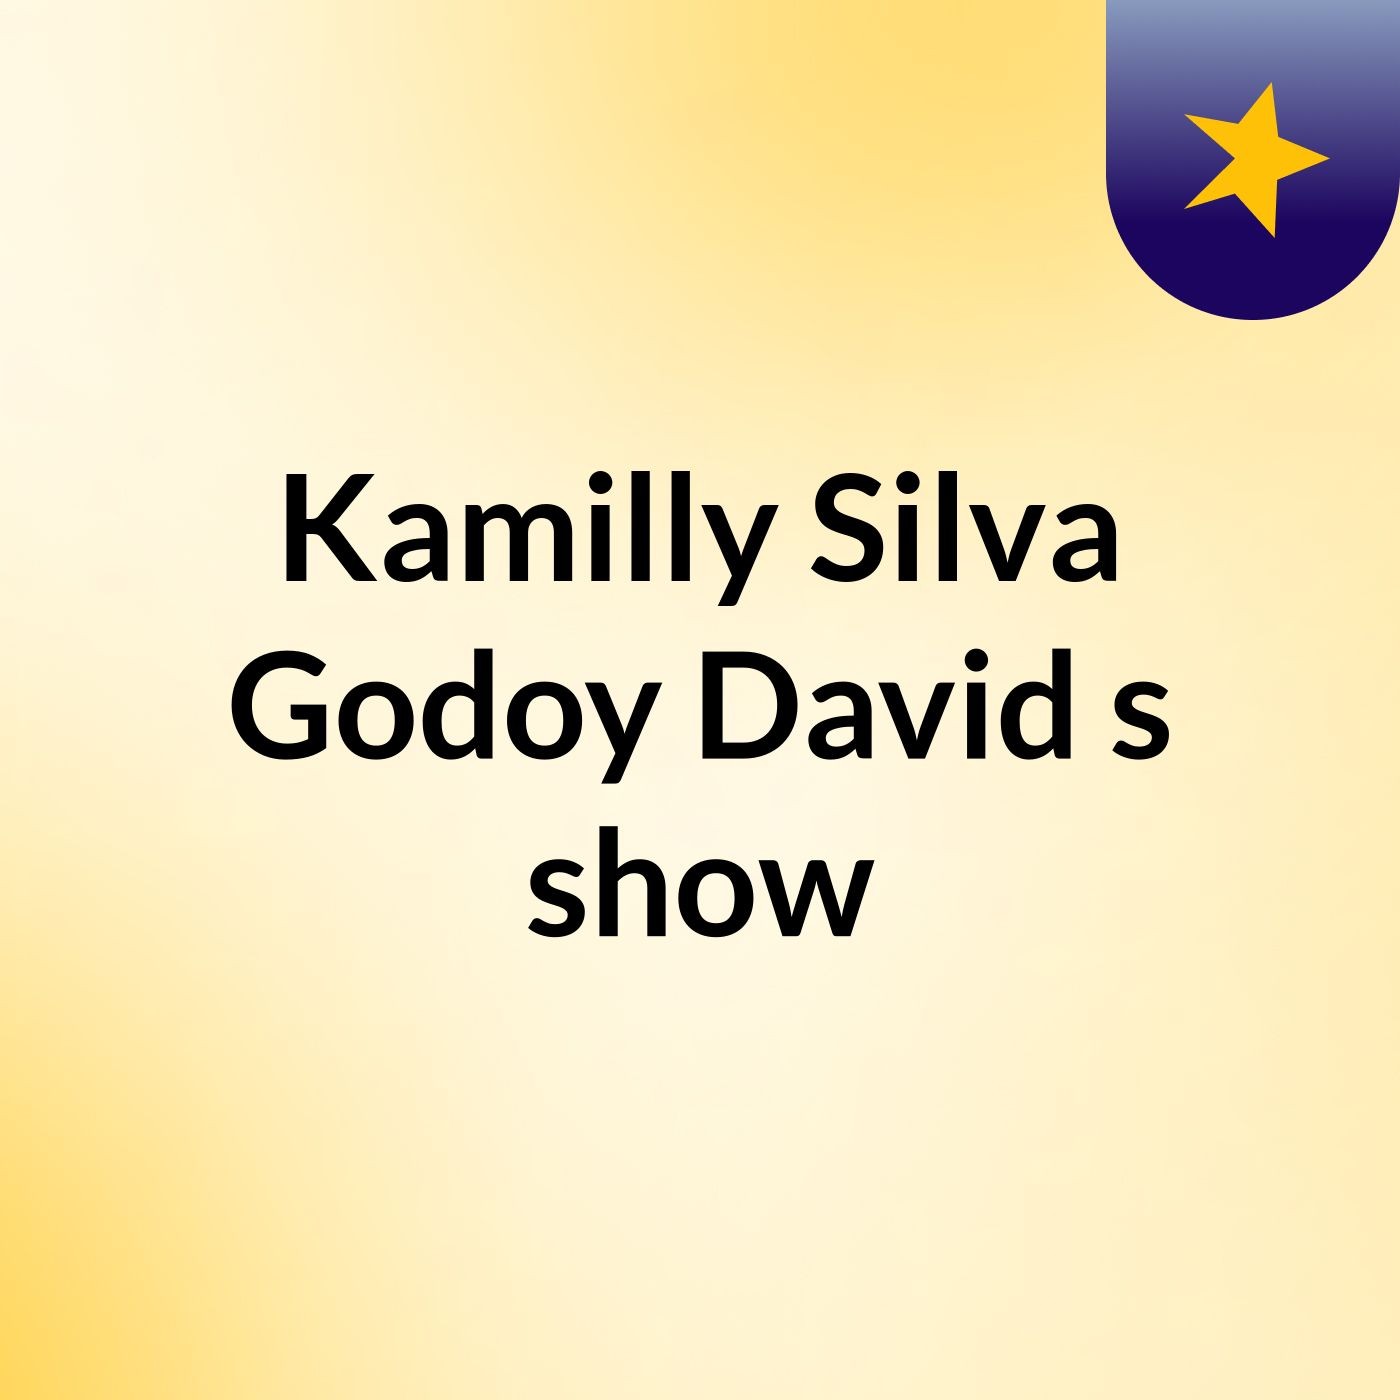 Kamilly Silva Godoy David's show